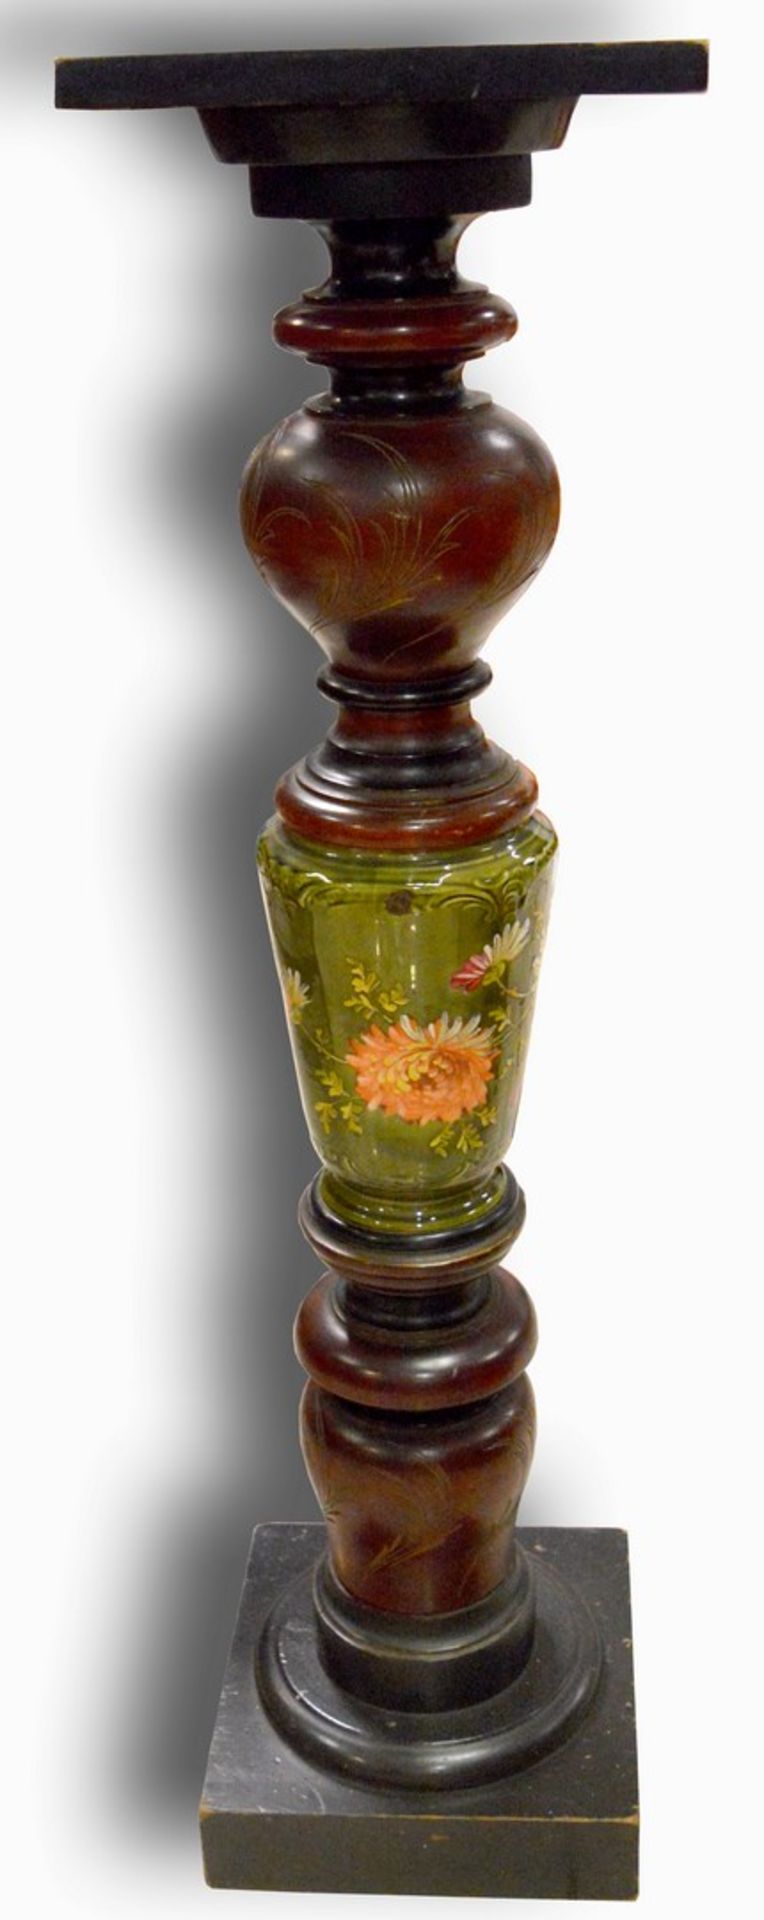 Gründerzeit-Blumensäule Hartholz, quadratischer Fuß, runder Säulenschaft, mit grünem Keramikeinsatz,